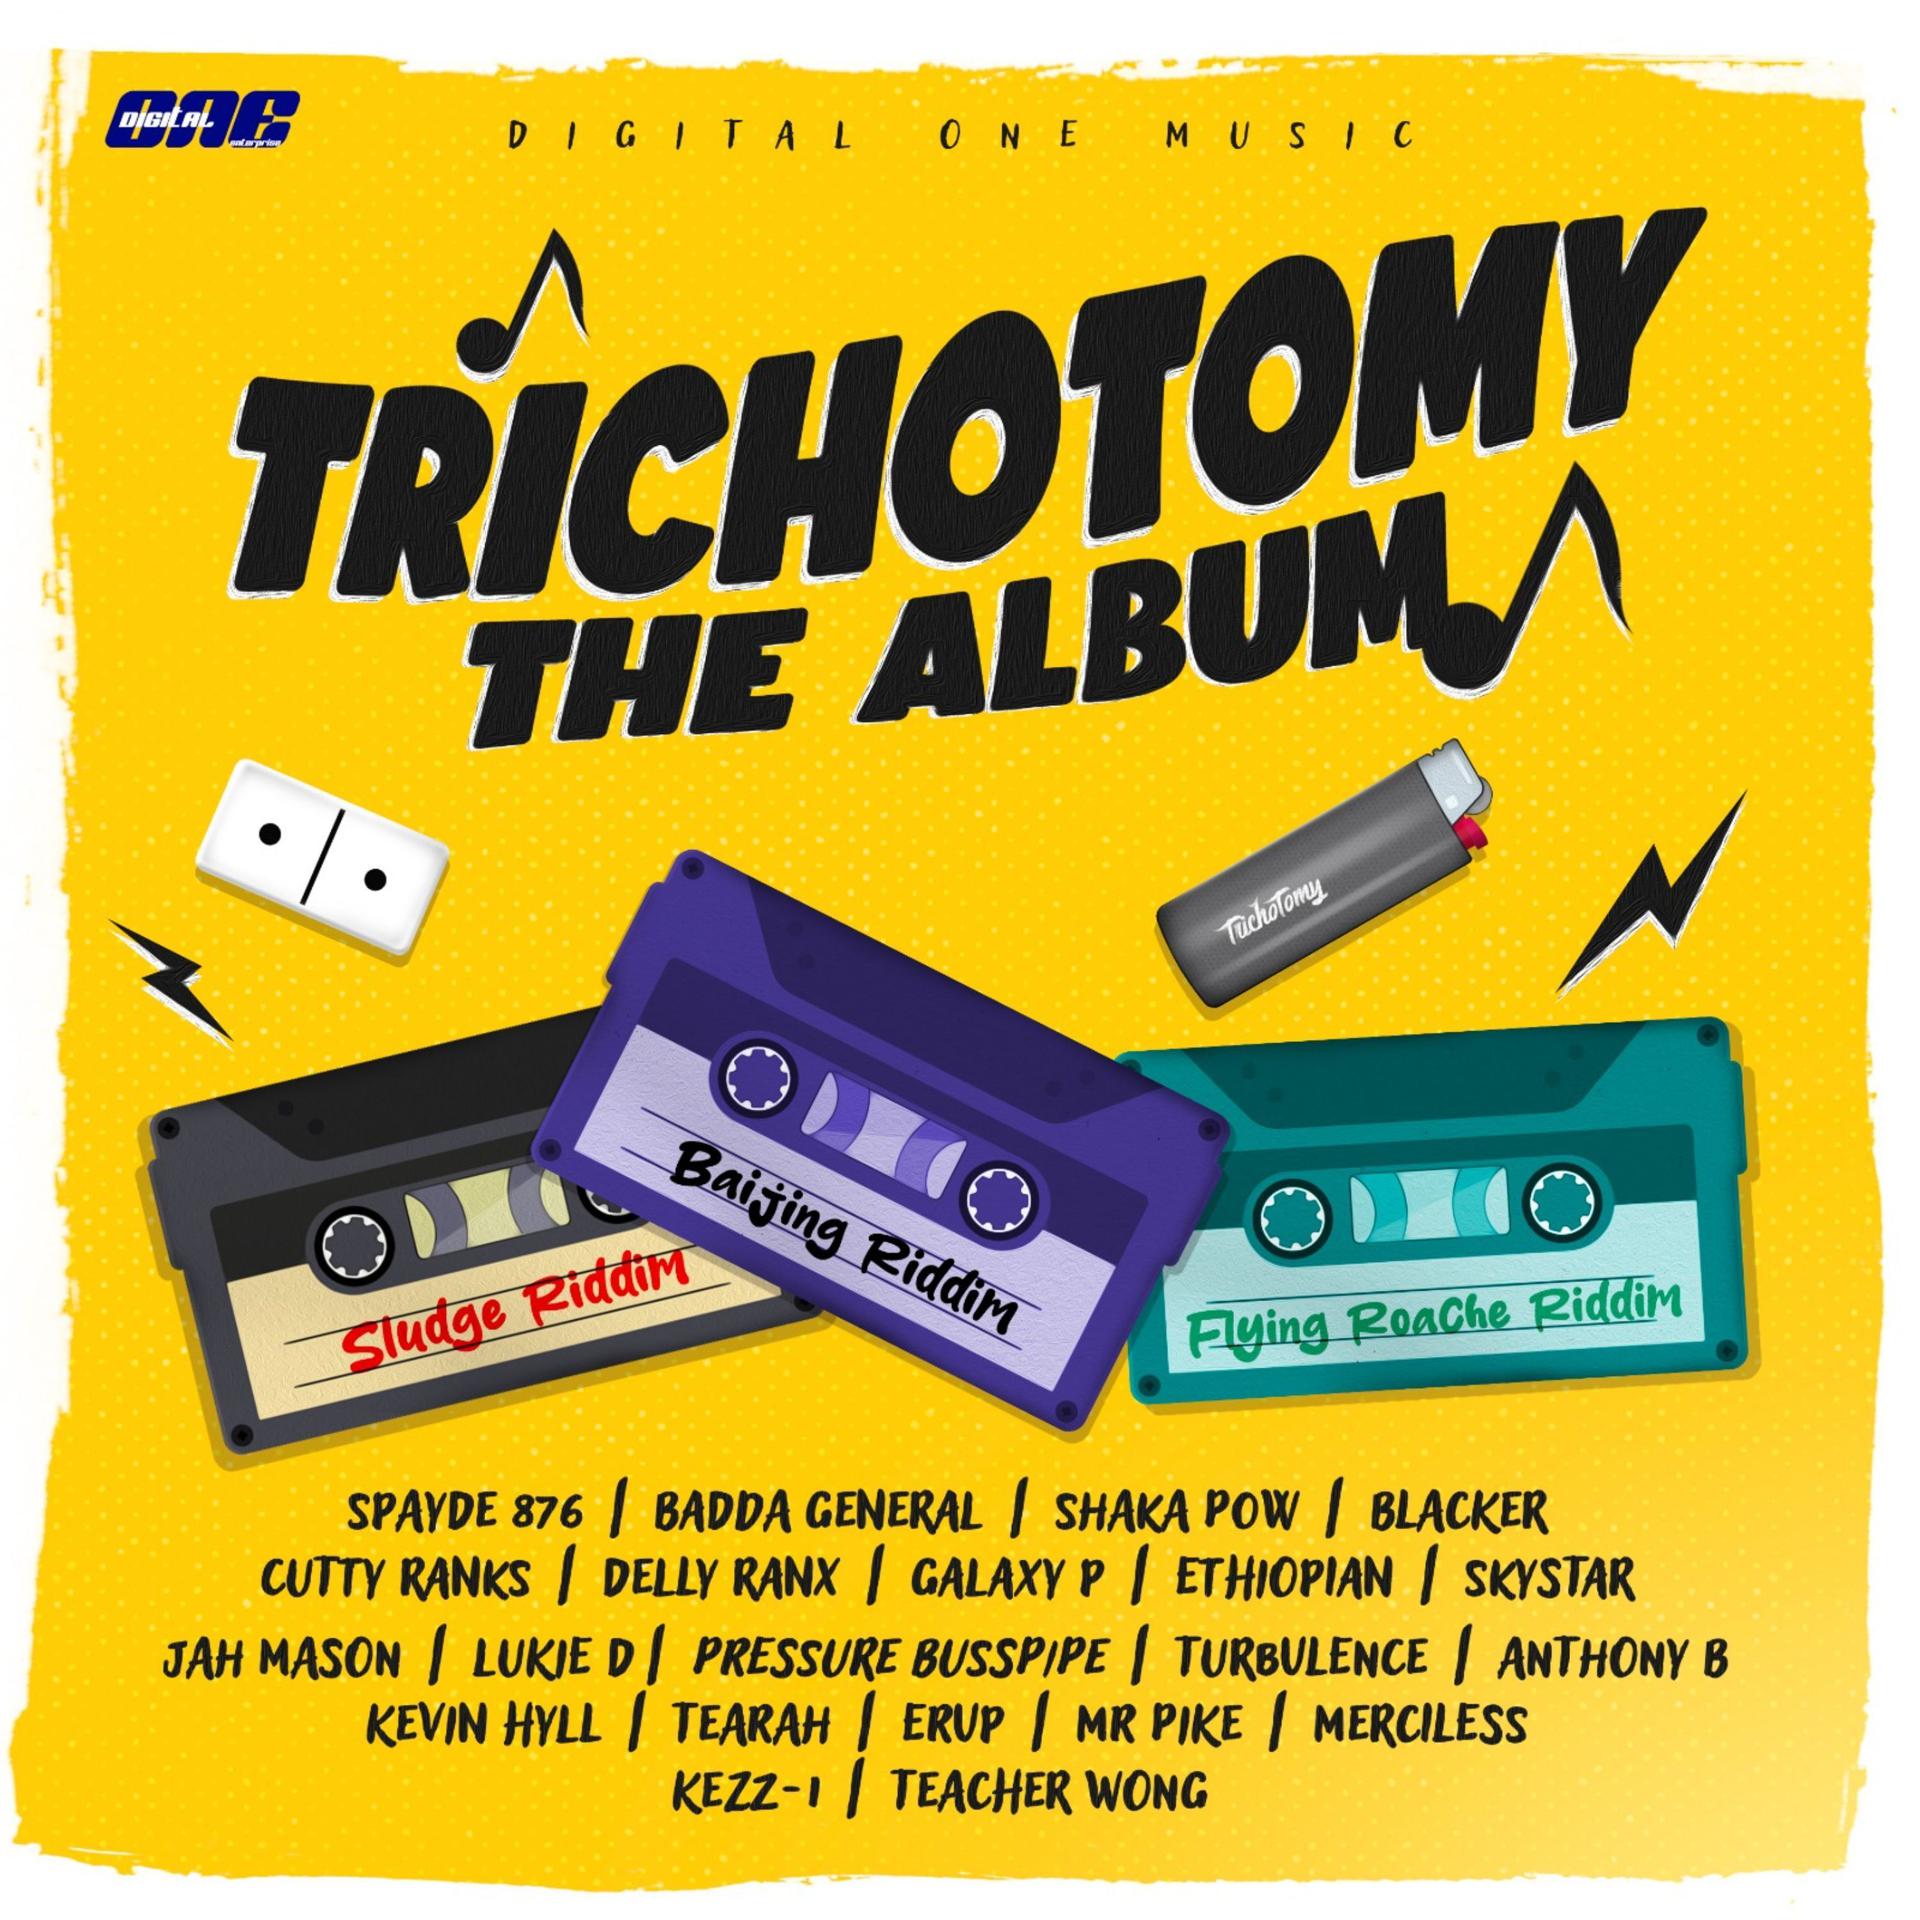 Постер альбома Trichotomy the Album (Sludge Riddim / Flying Roache Riddim)Baijing Riddim / )